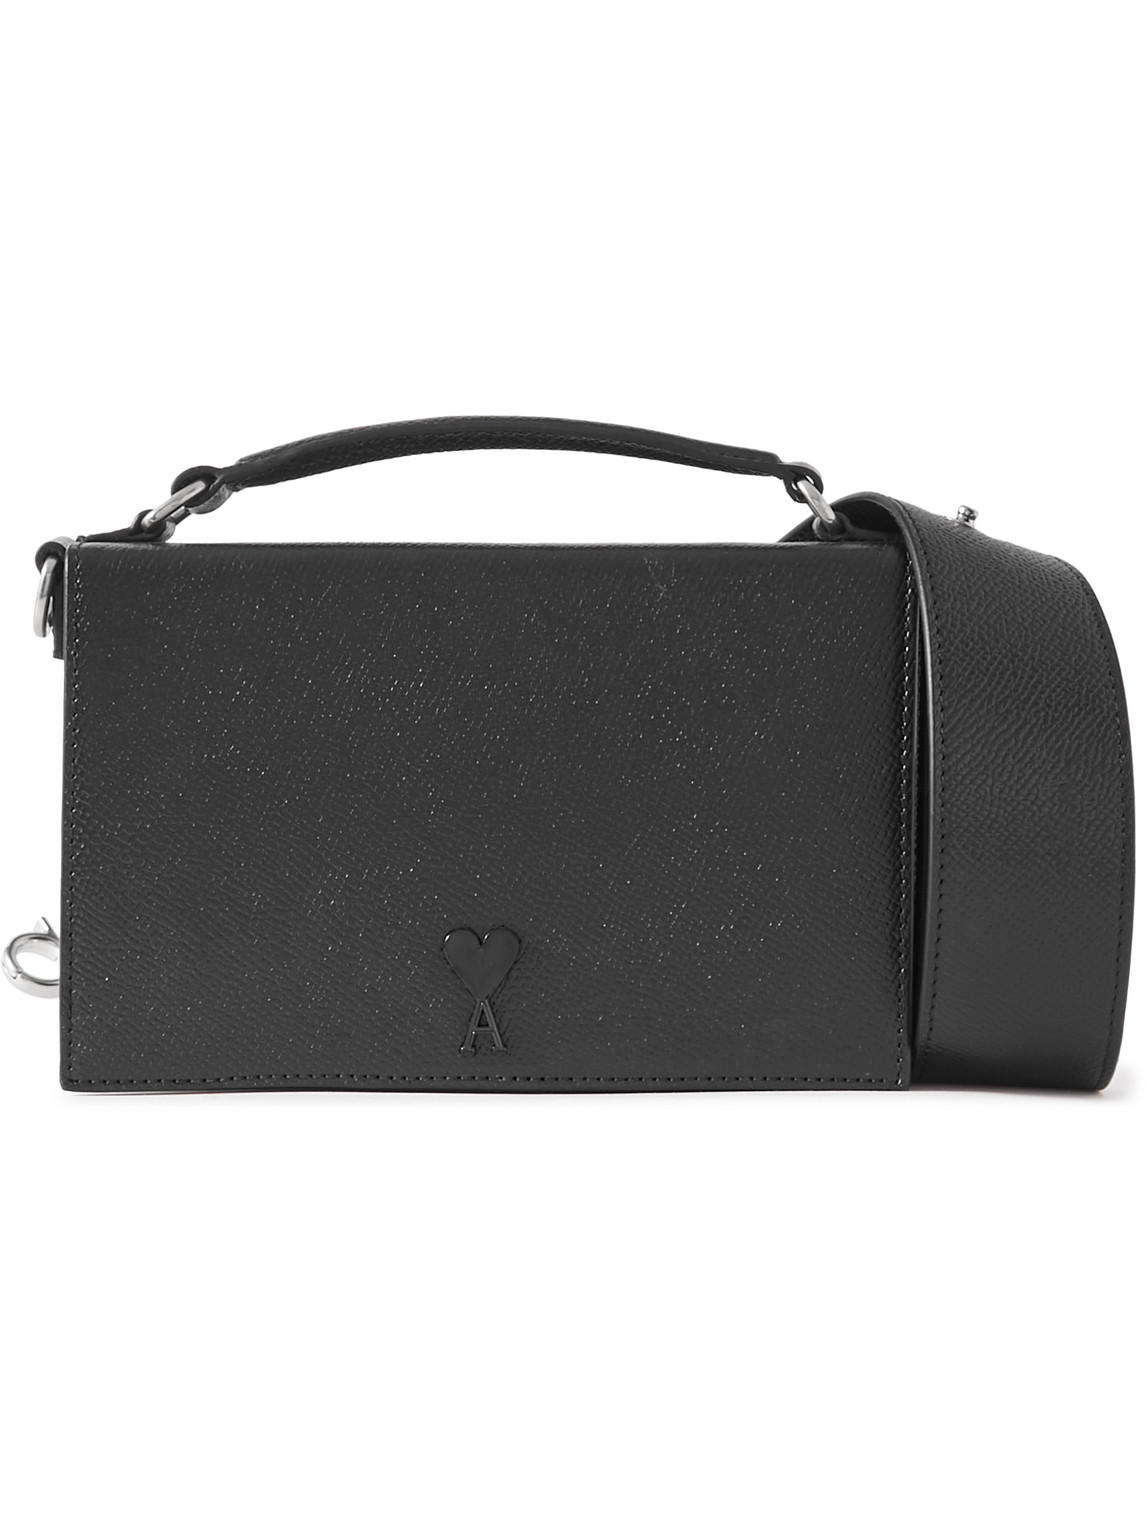 ADC Full-Grain Leather Messenger Bag